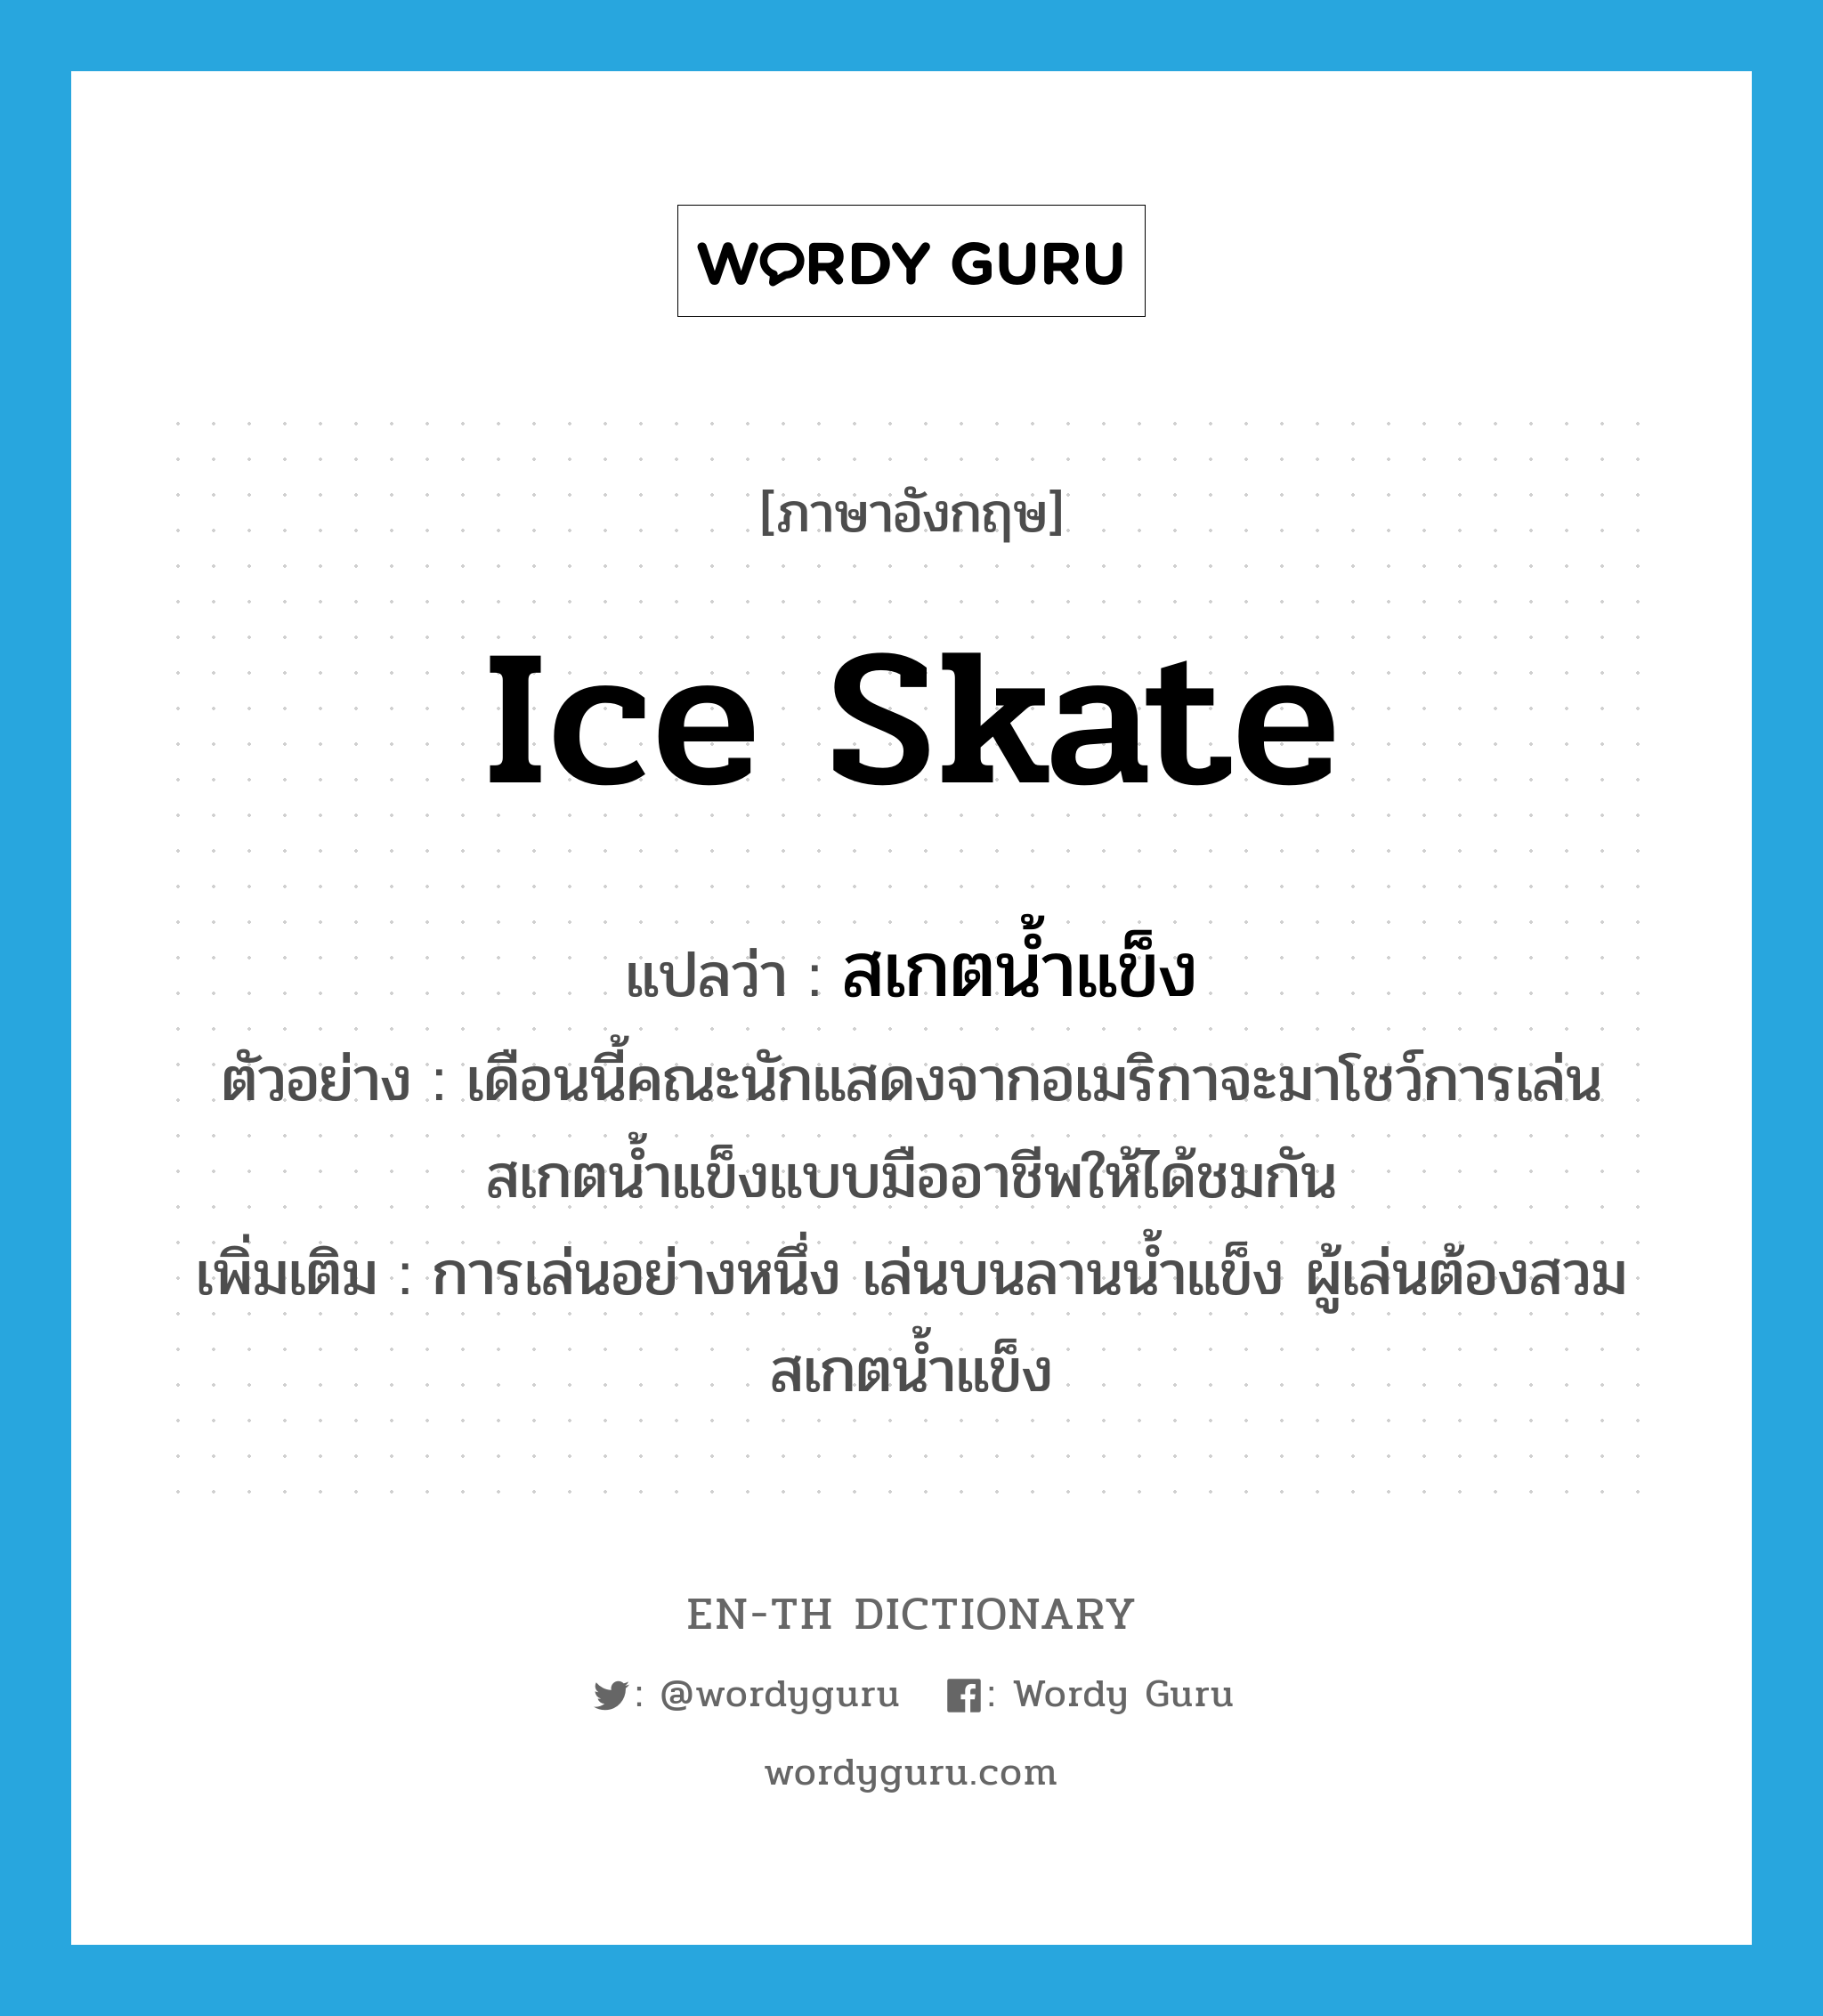 ice skate แปลว่า?, คำศัพท์ภาษาอังกฤษ ice skate แปลว่า สเกตน้ำแข็ง ประเภท N ตัวอย่าง เดือนนี้คณะนักแสดงจากอเมริกาจะมาโชว์การเล่นสเกตน้ำแข็งแบบมืออาชีพให้ได้ชมกัน เพิ่มเติม การเล่นอย่างหนึ่ง เล่นบนลานน้ำแข็ง ผู้เล่นต้องสวมสเกตน้ำแข็ง หมวด N